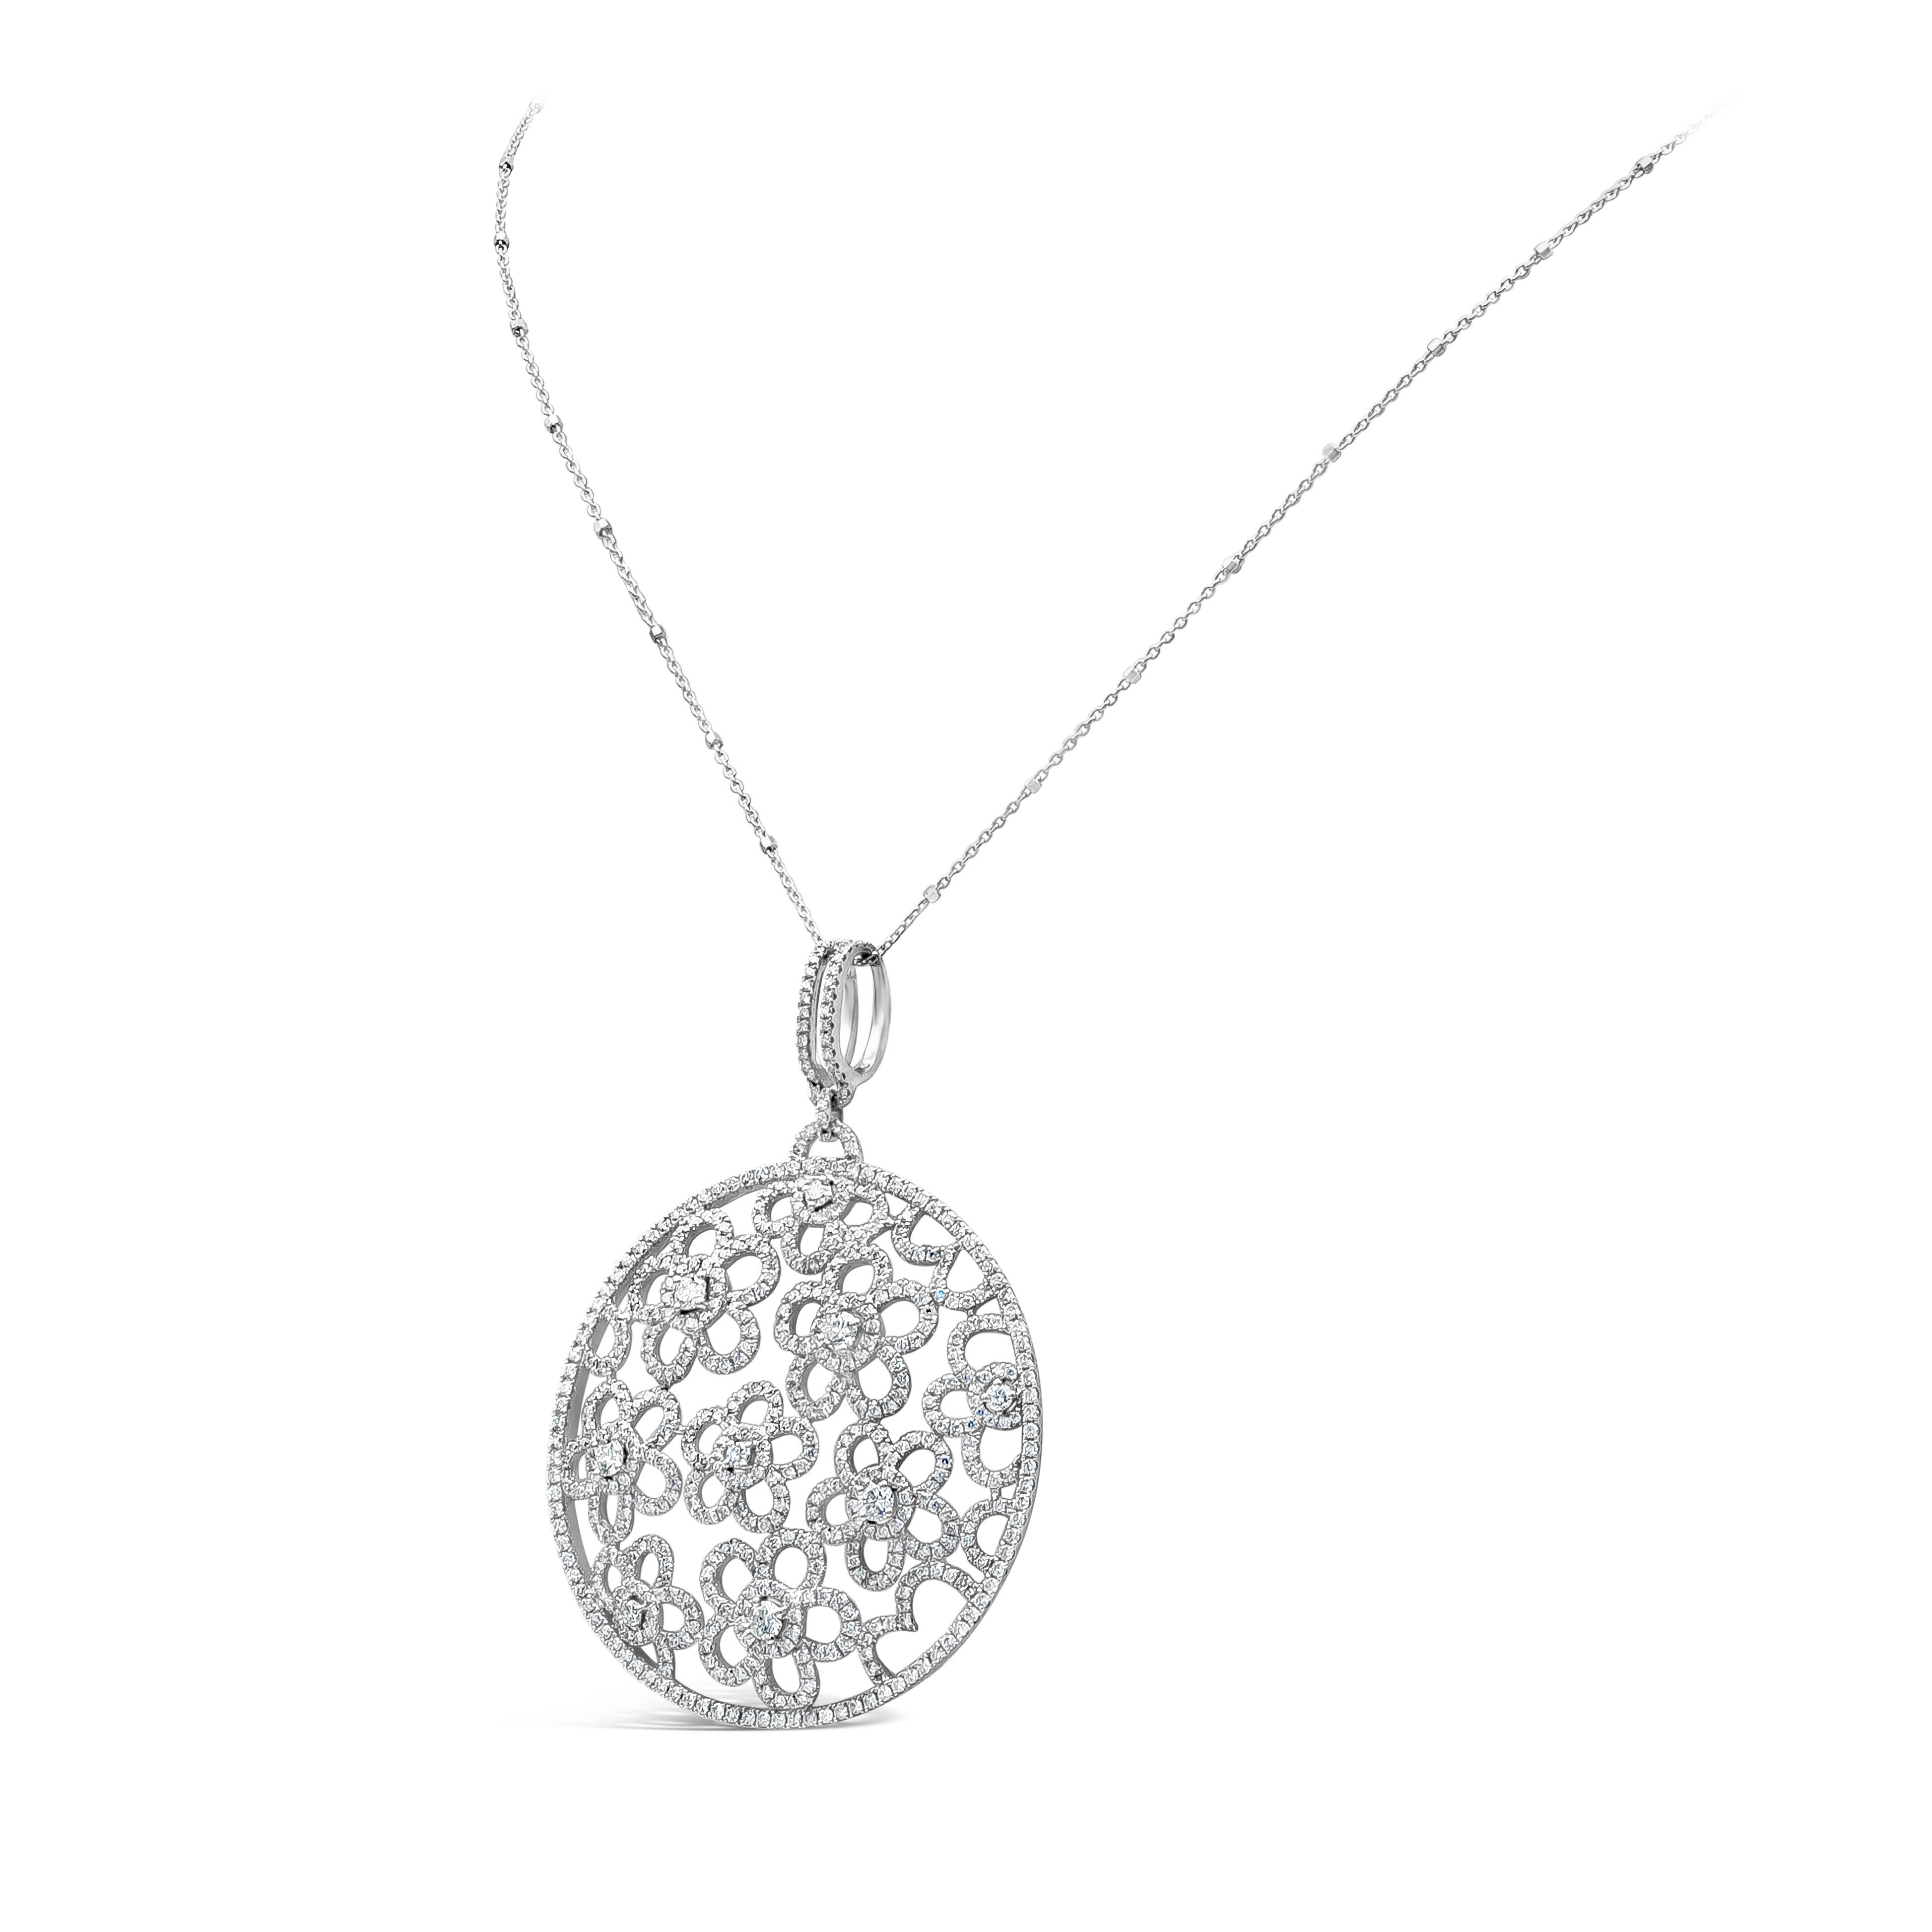 Collier pendentif circulaire élégant présentant un motif floral ajouré et 3,92 carats de diamants ronds brillants. Serti en micro-pavé et en serti clos, fait d'or blanc 18K, suspendu à une chaîne en or blanc de 18 pouces. La chaîne peut être changée